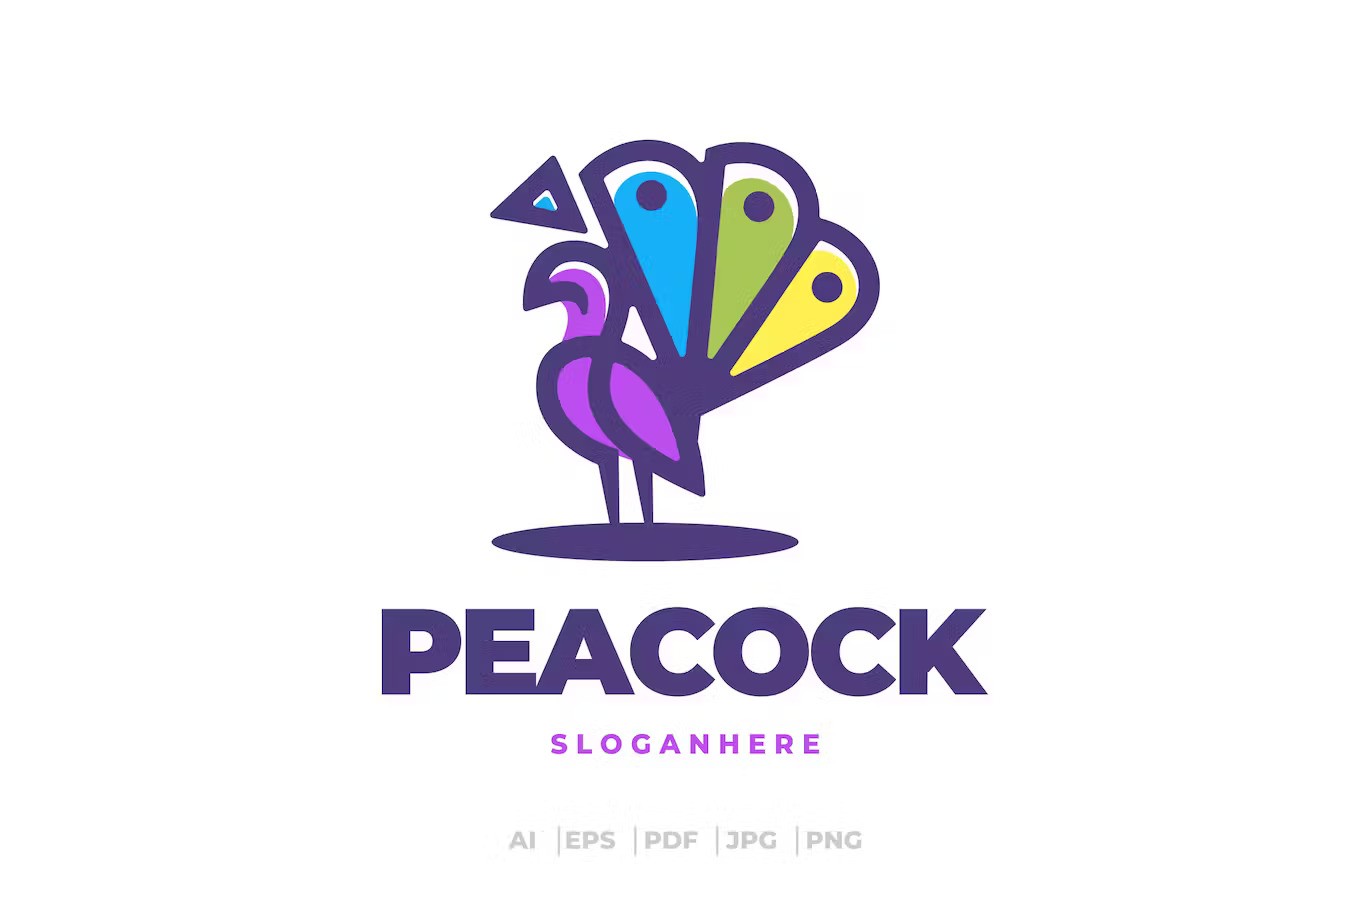 A peacock logo template